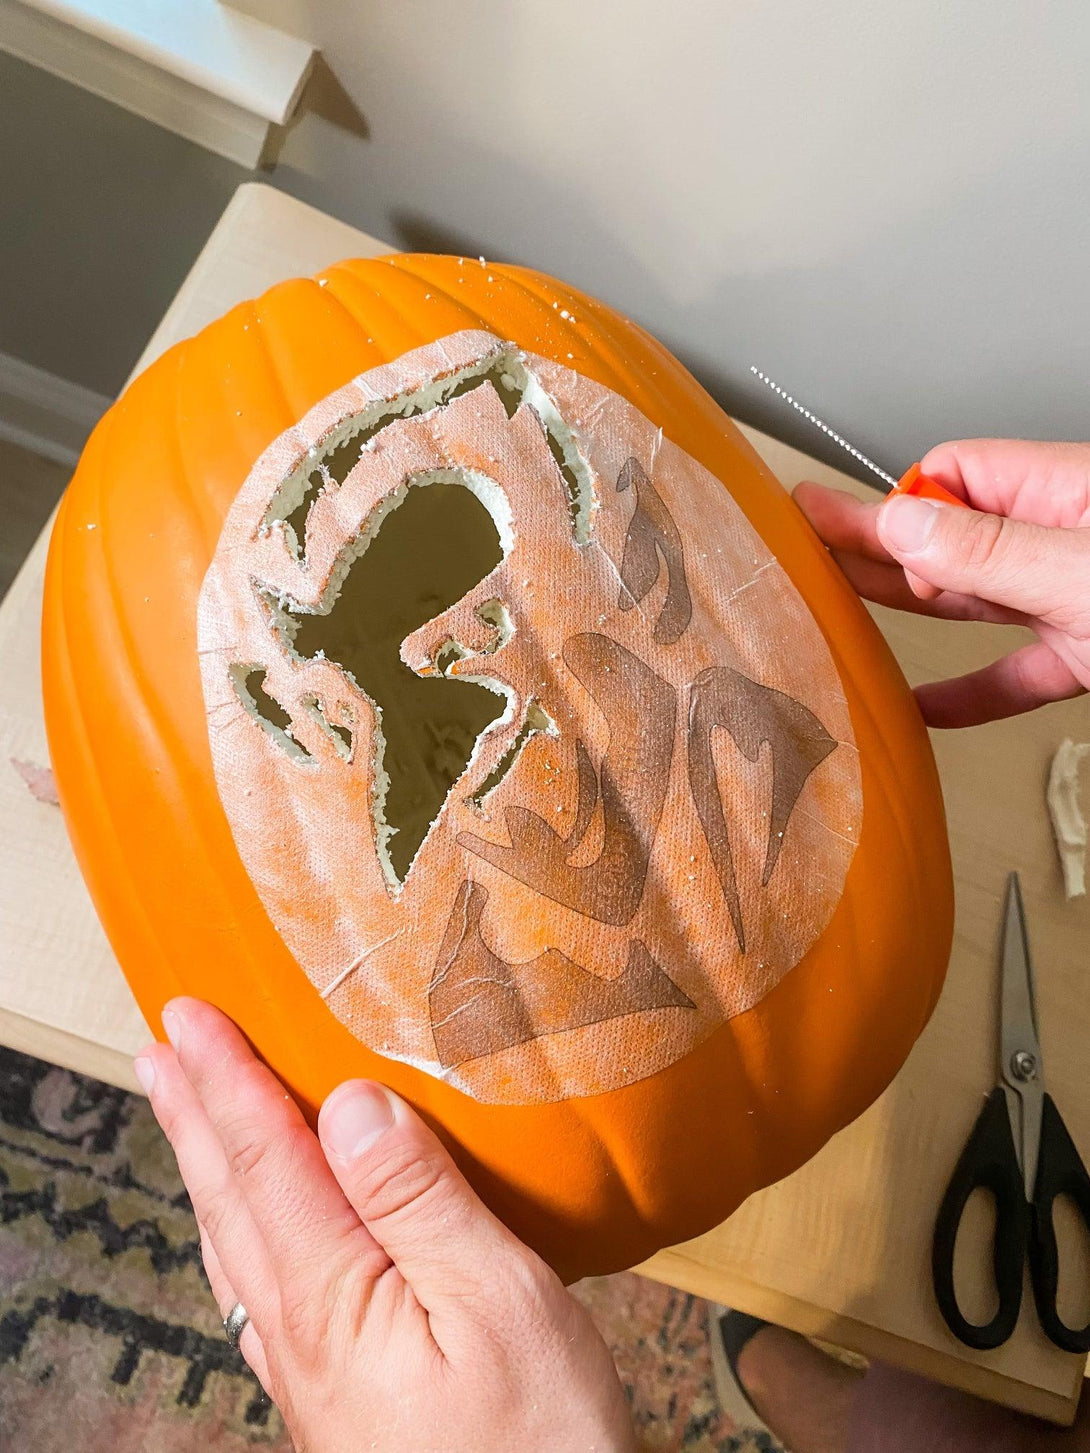 MAGA Pumpkin Carving Stencil - Pumpkin HQ